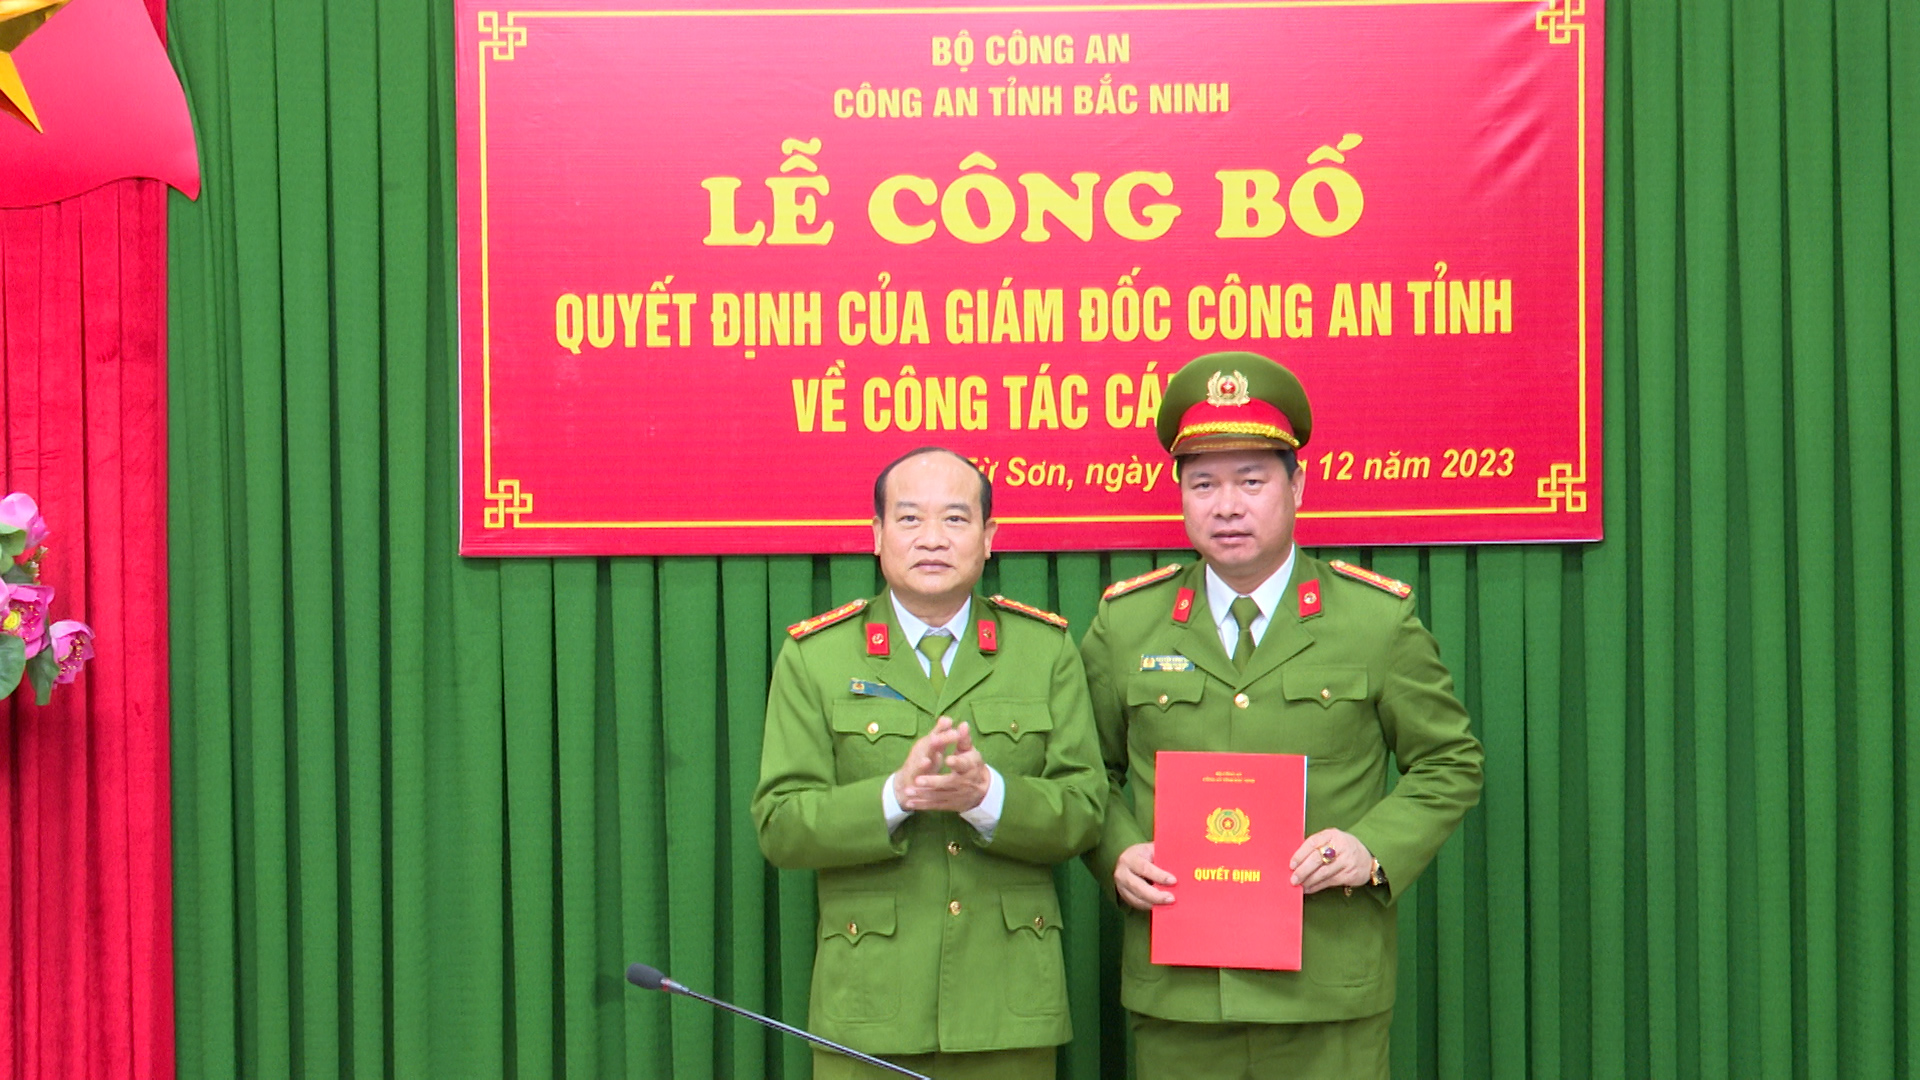 Công bố quyết định của Giám đốc Công an Bắc Ninh về công tác cán bộ